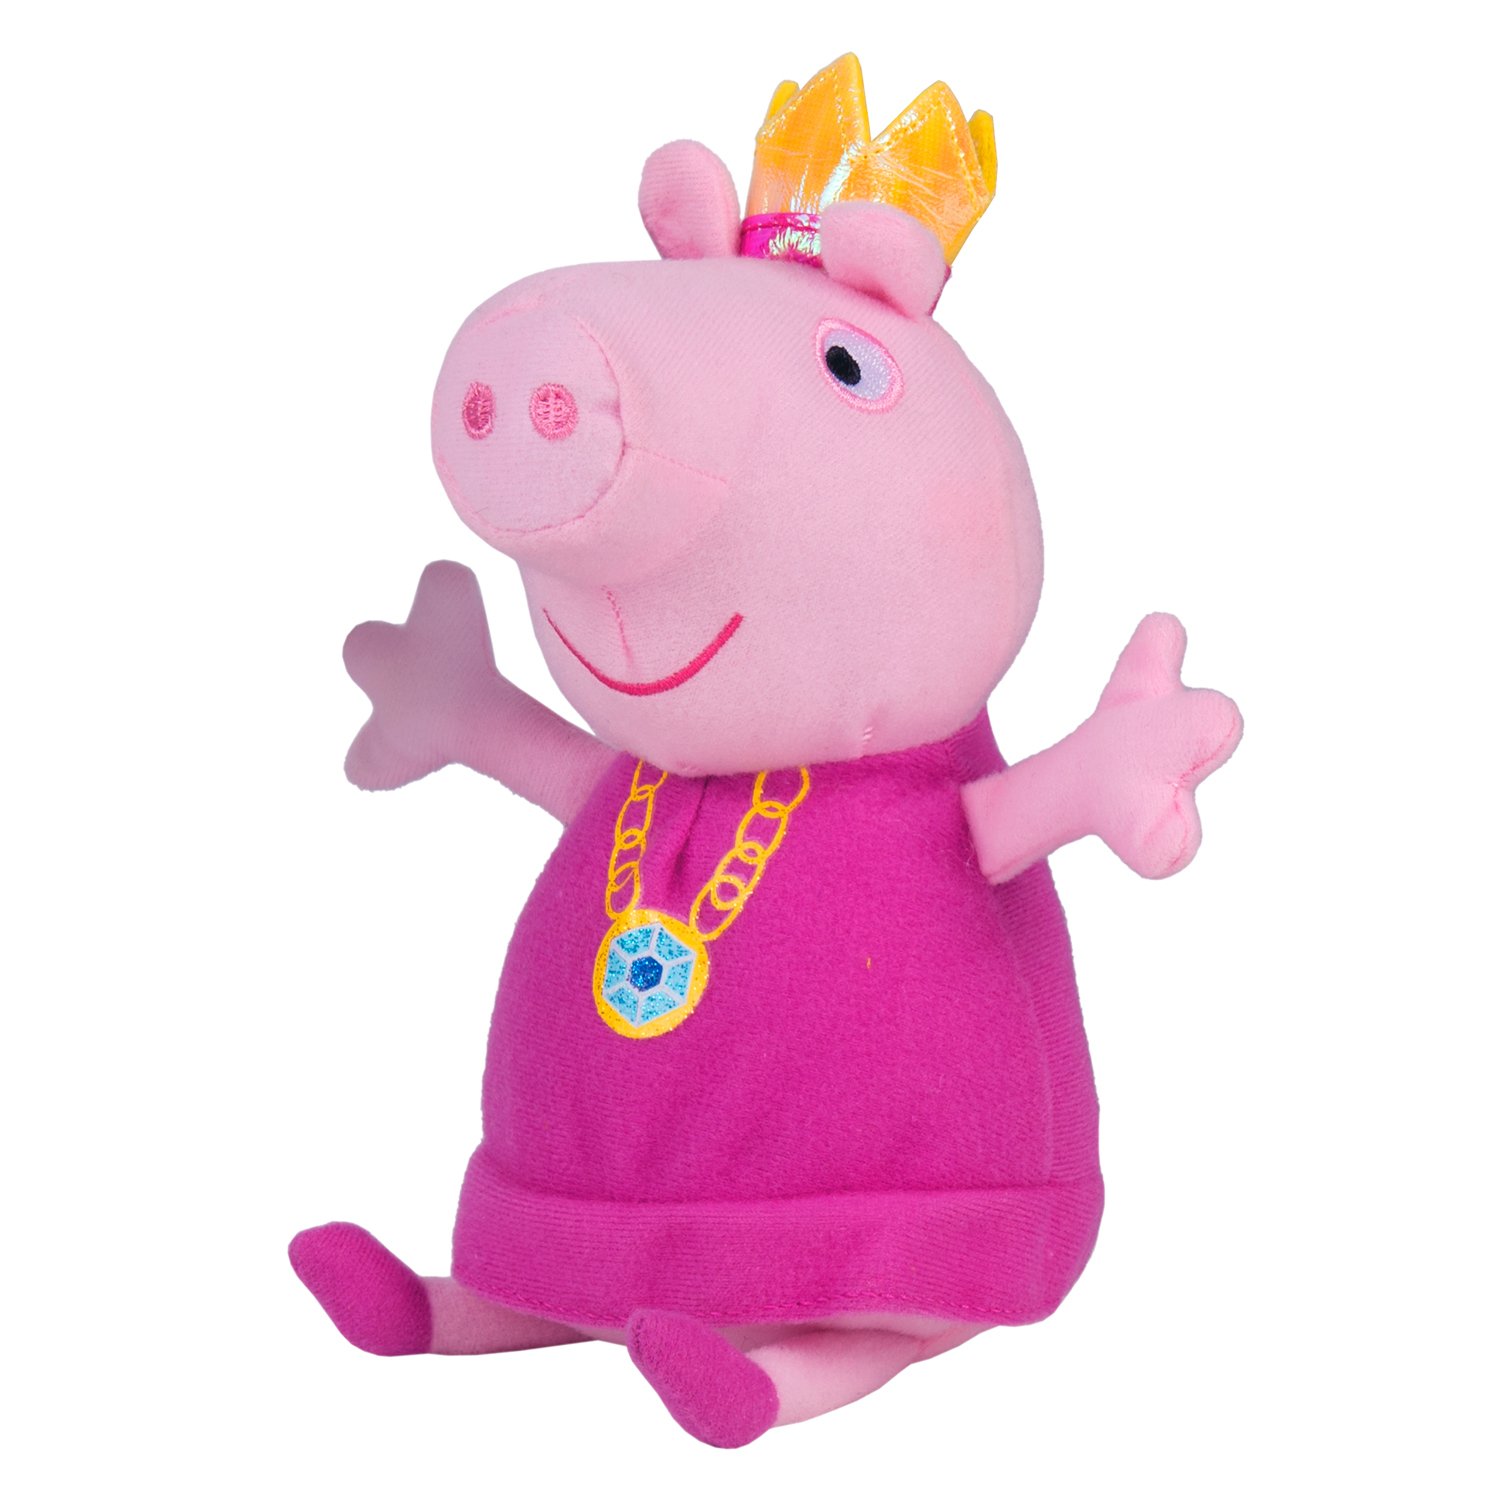 Свинку пеппу мягкую игрушку. Игрушки Свинка Пеппа Джордж детский мир. Игрушка Свинка Пеппа Piggy. Свинка Пеппа принцесса. Свинка Пеппа Энканто.